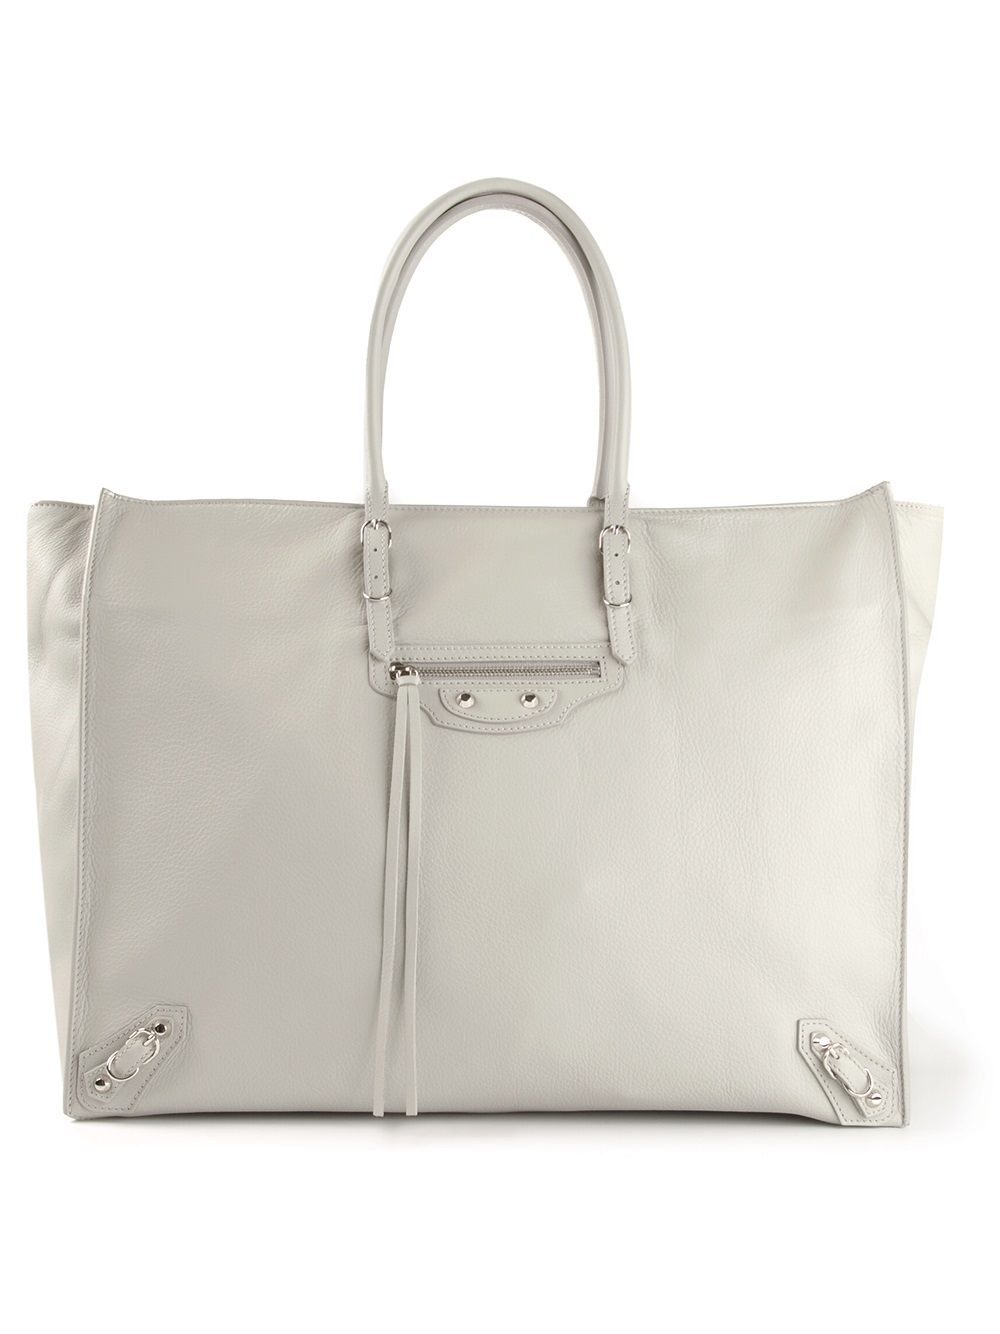 Balenciaga Grey Calfskin Leather A4 Papier Tote Bag - Yoogi's Closet